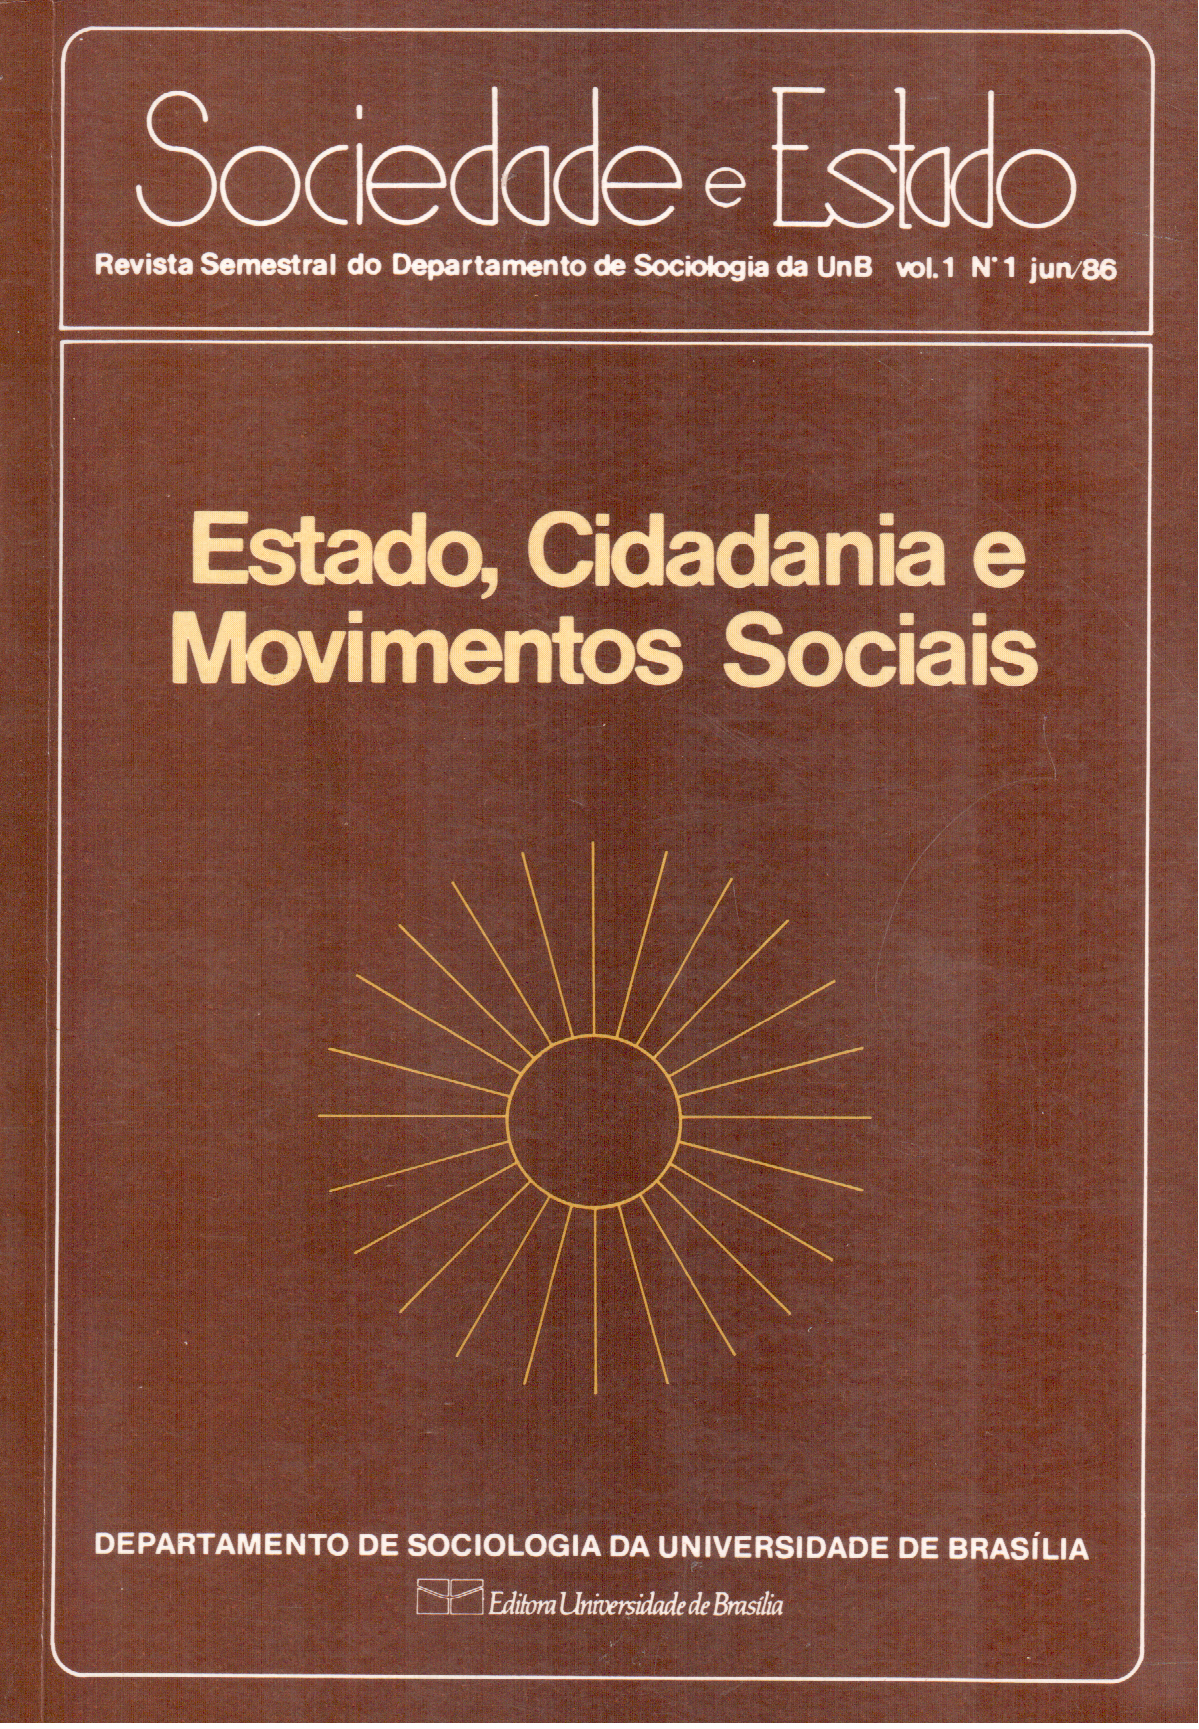 					Visualizar v. 1 n. 01 (1986): ESTADO, CIDADANIA E MOVIMENTOS SOCIAIS
				